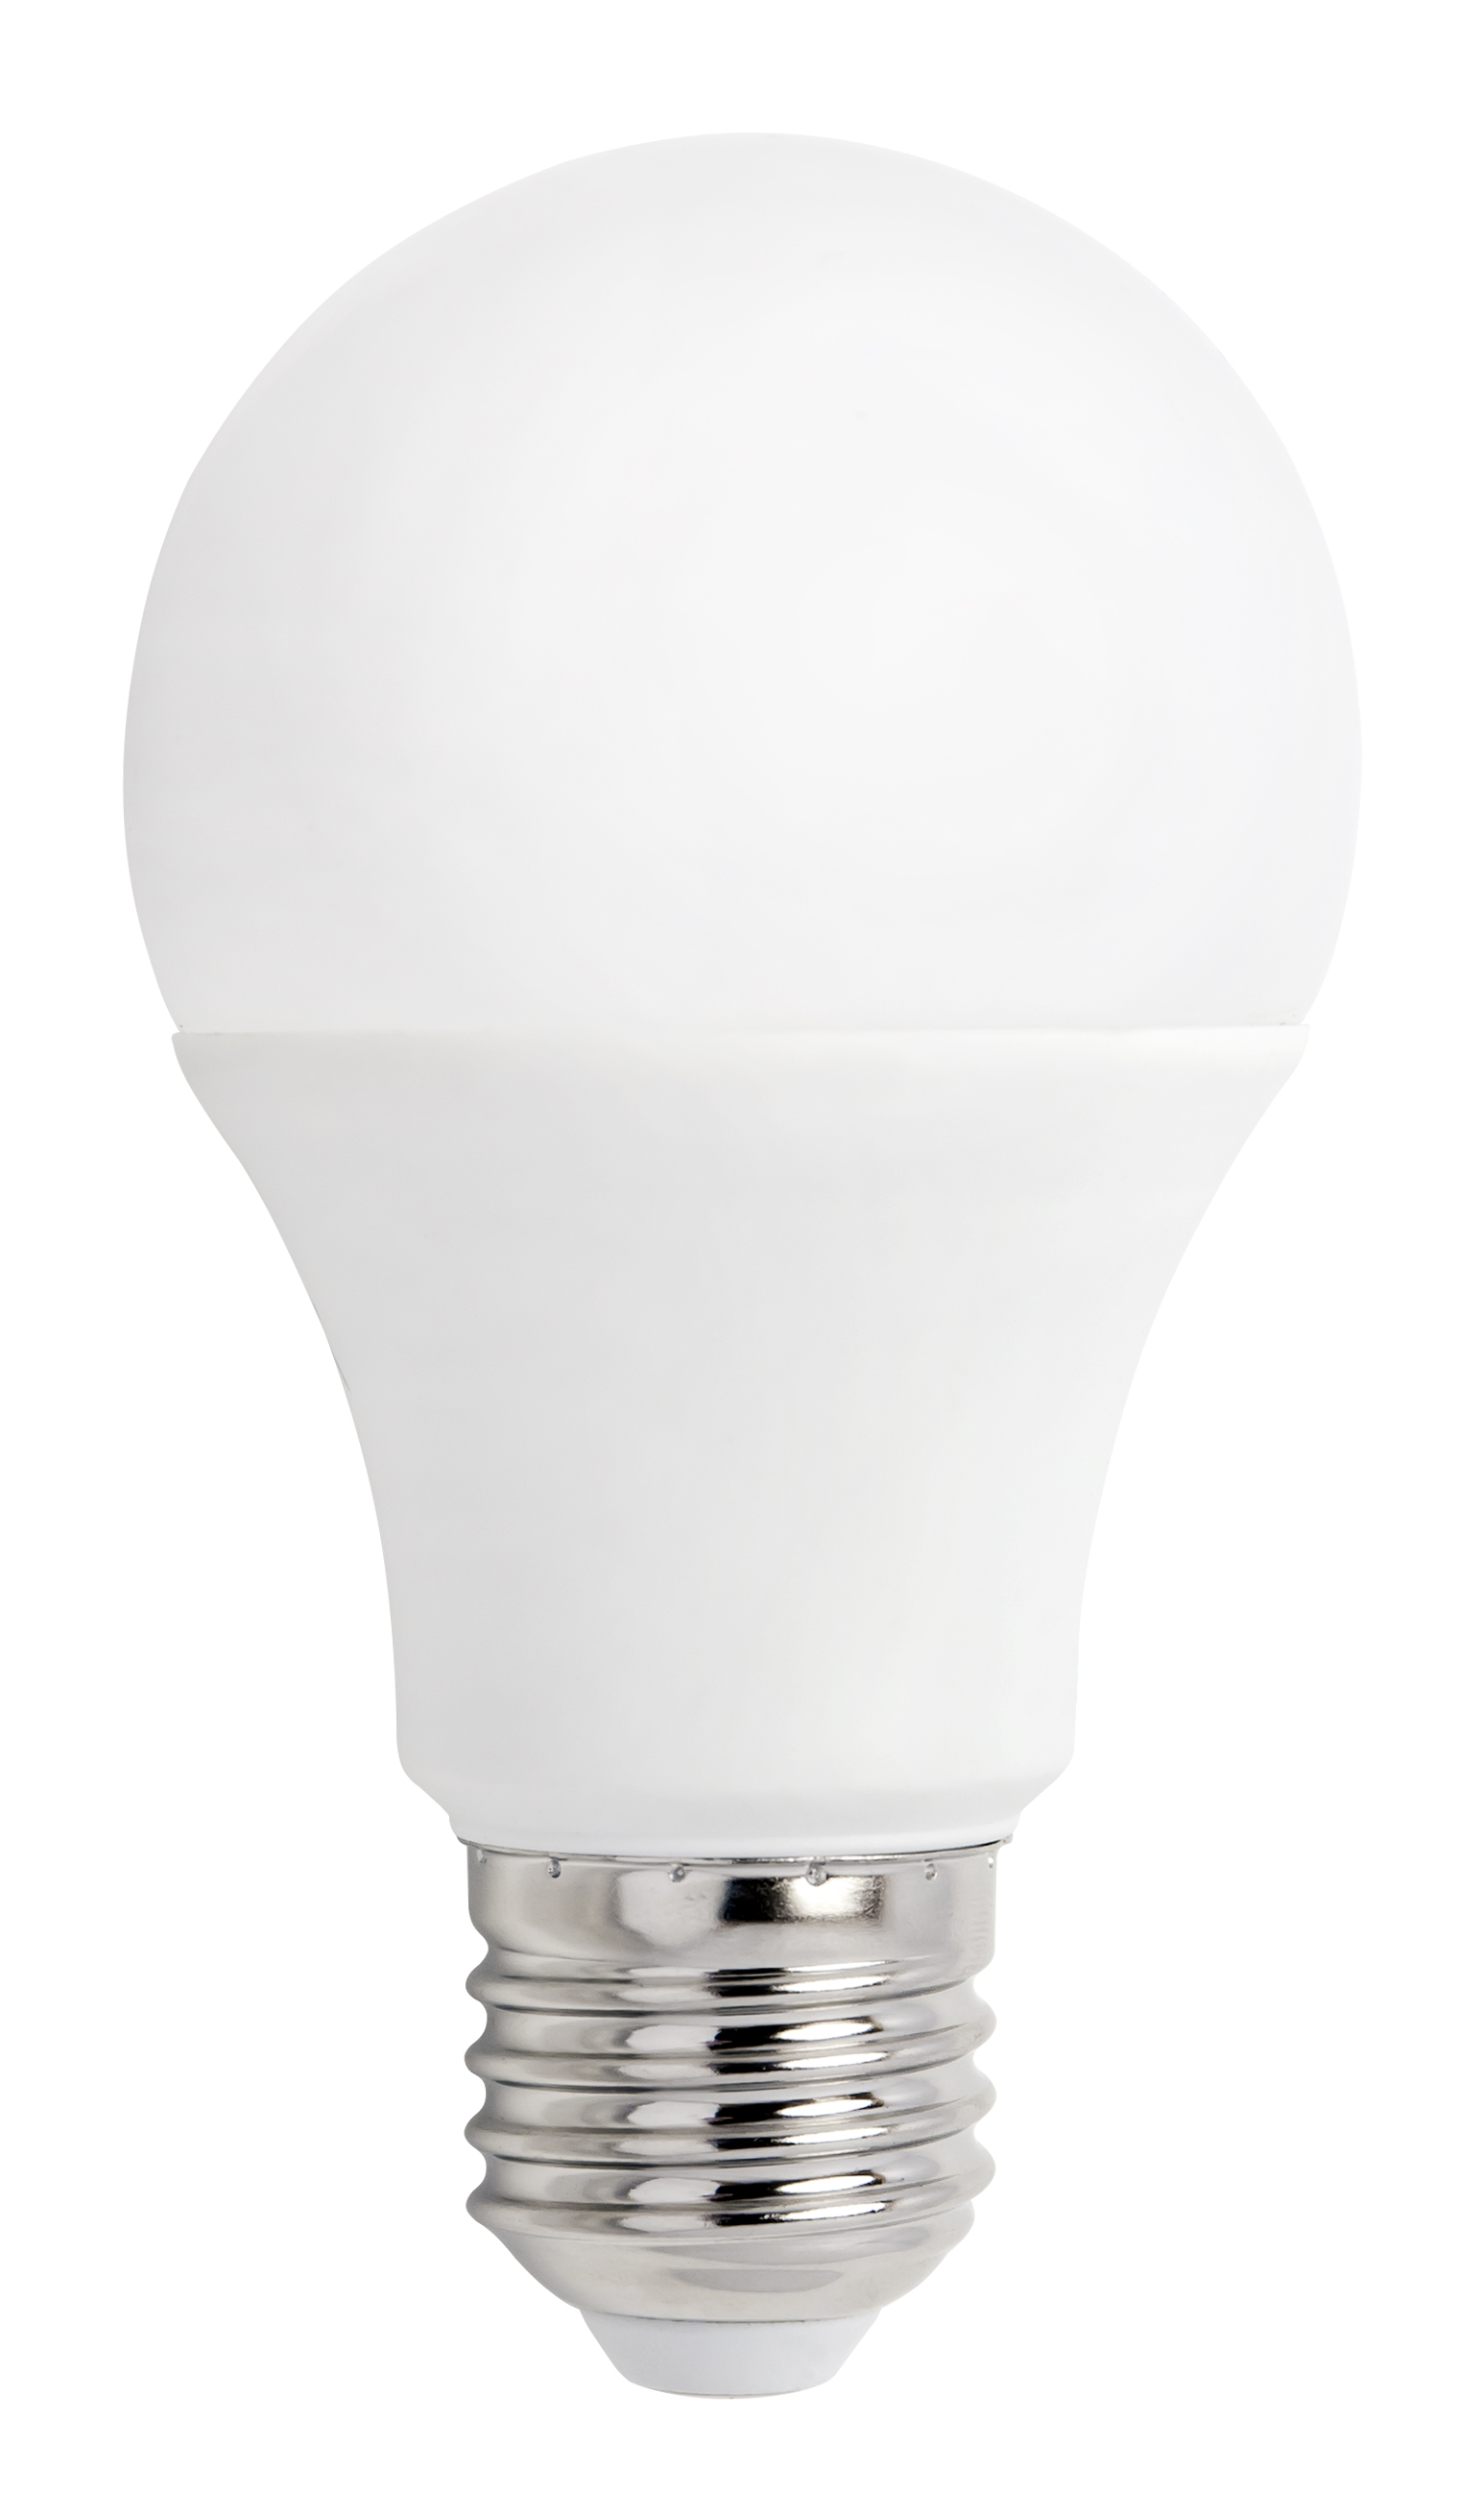 VielesAlles SPECTRUM LED Glühbirne E27 GLS 230V / 10W